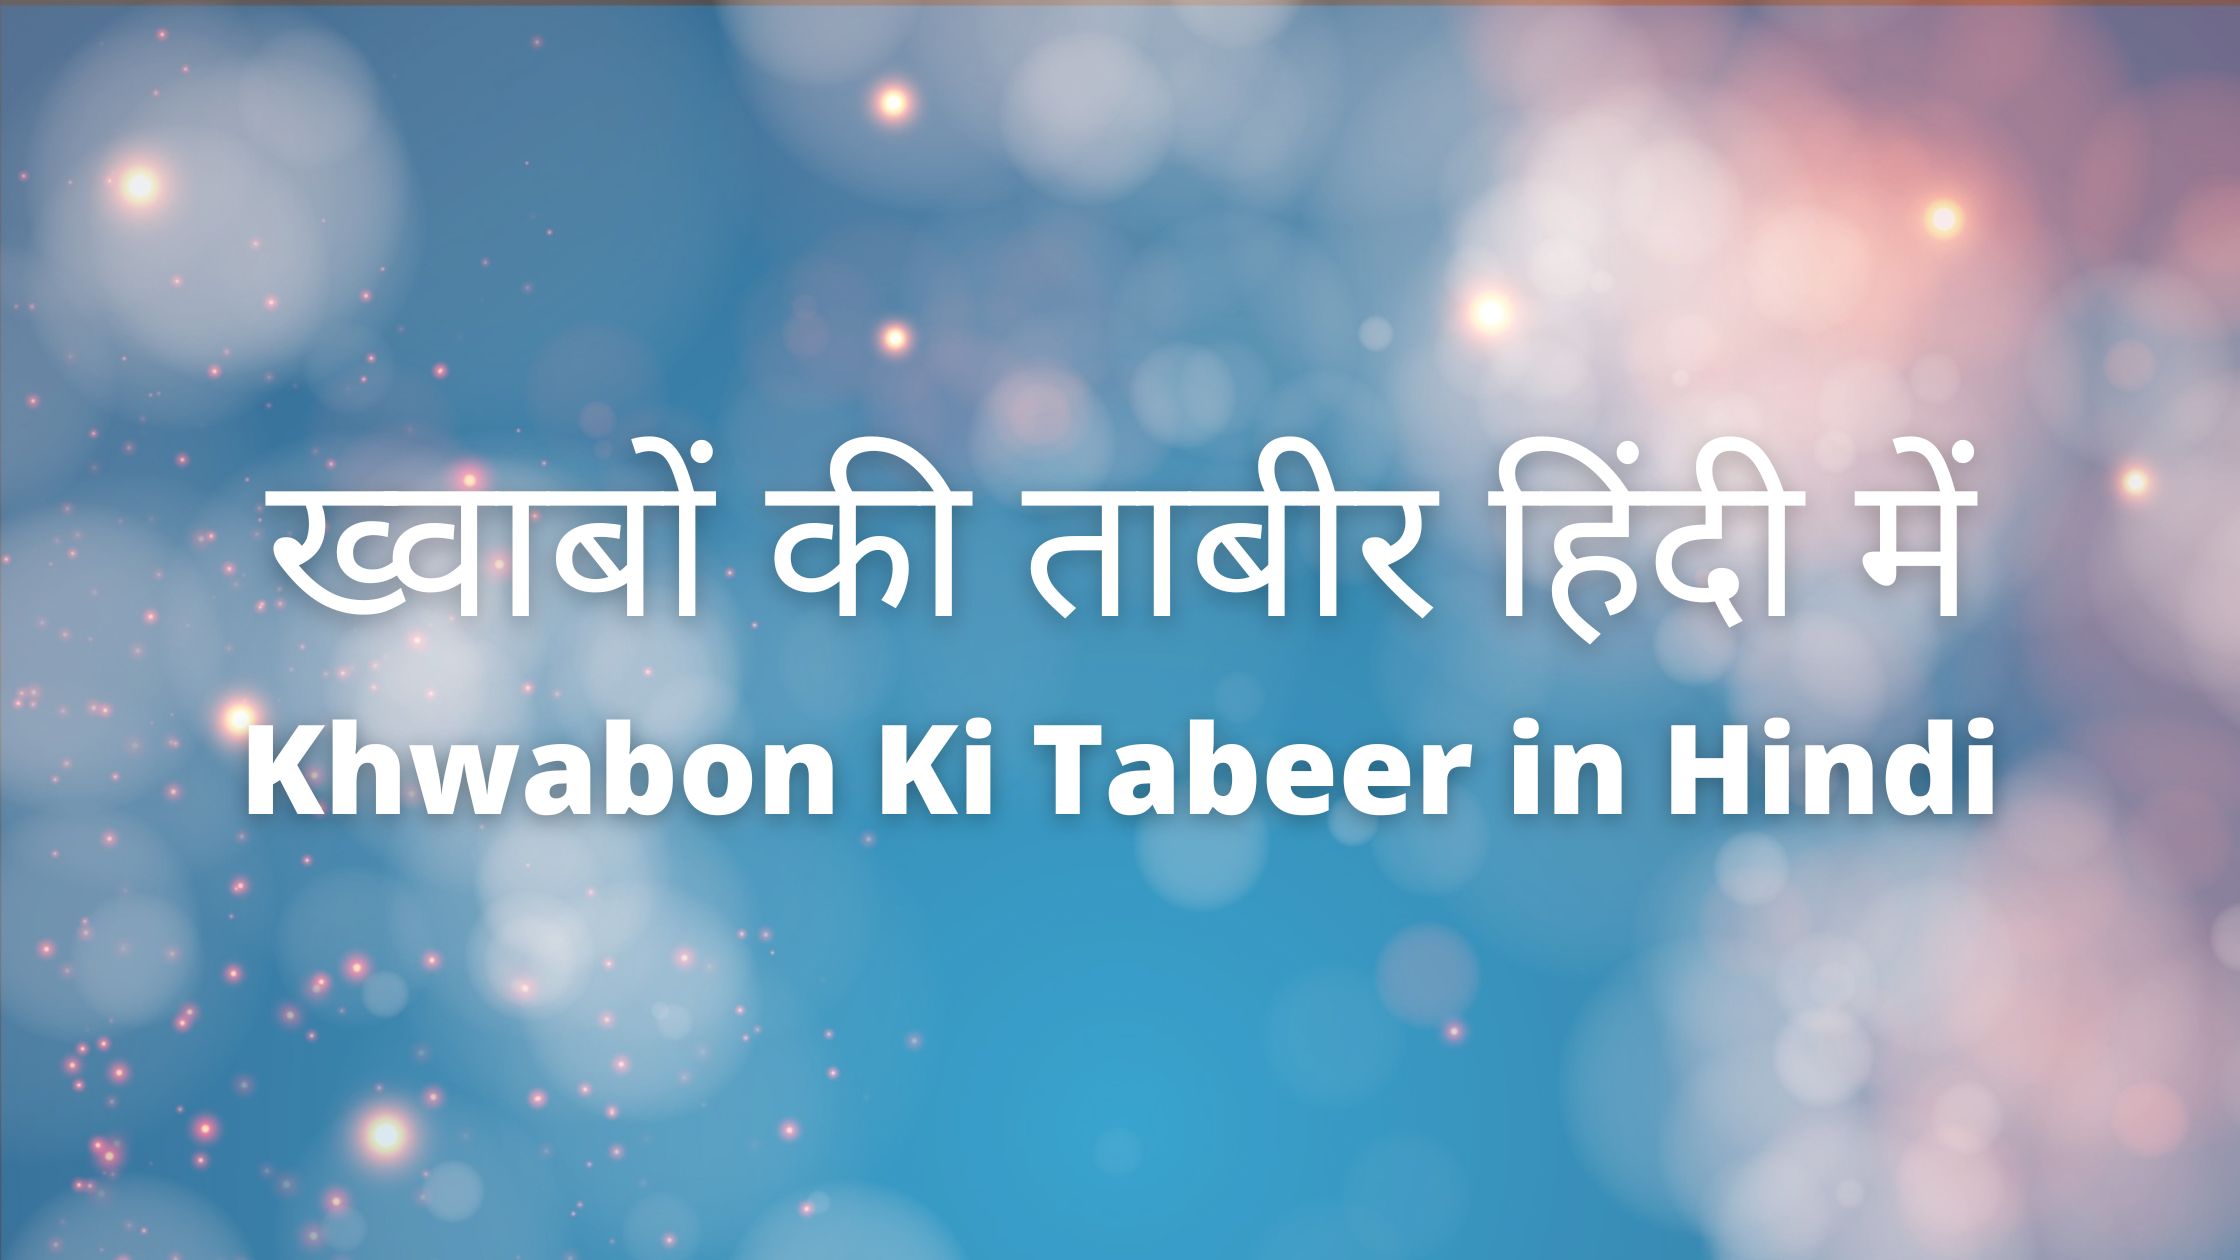 Khwabon Ki Tabeer in Hindi - ख्वाबों की ताबीर हिंदी में